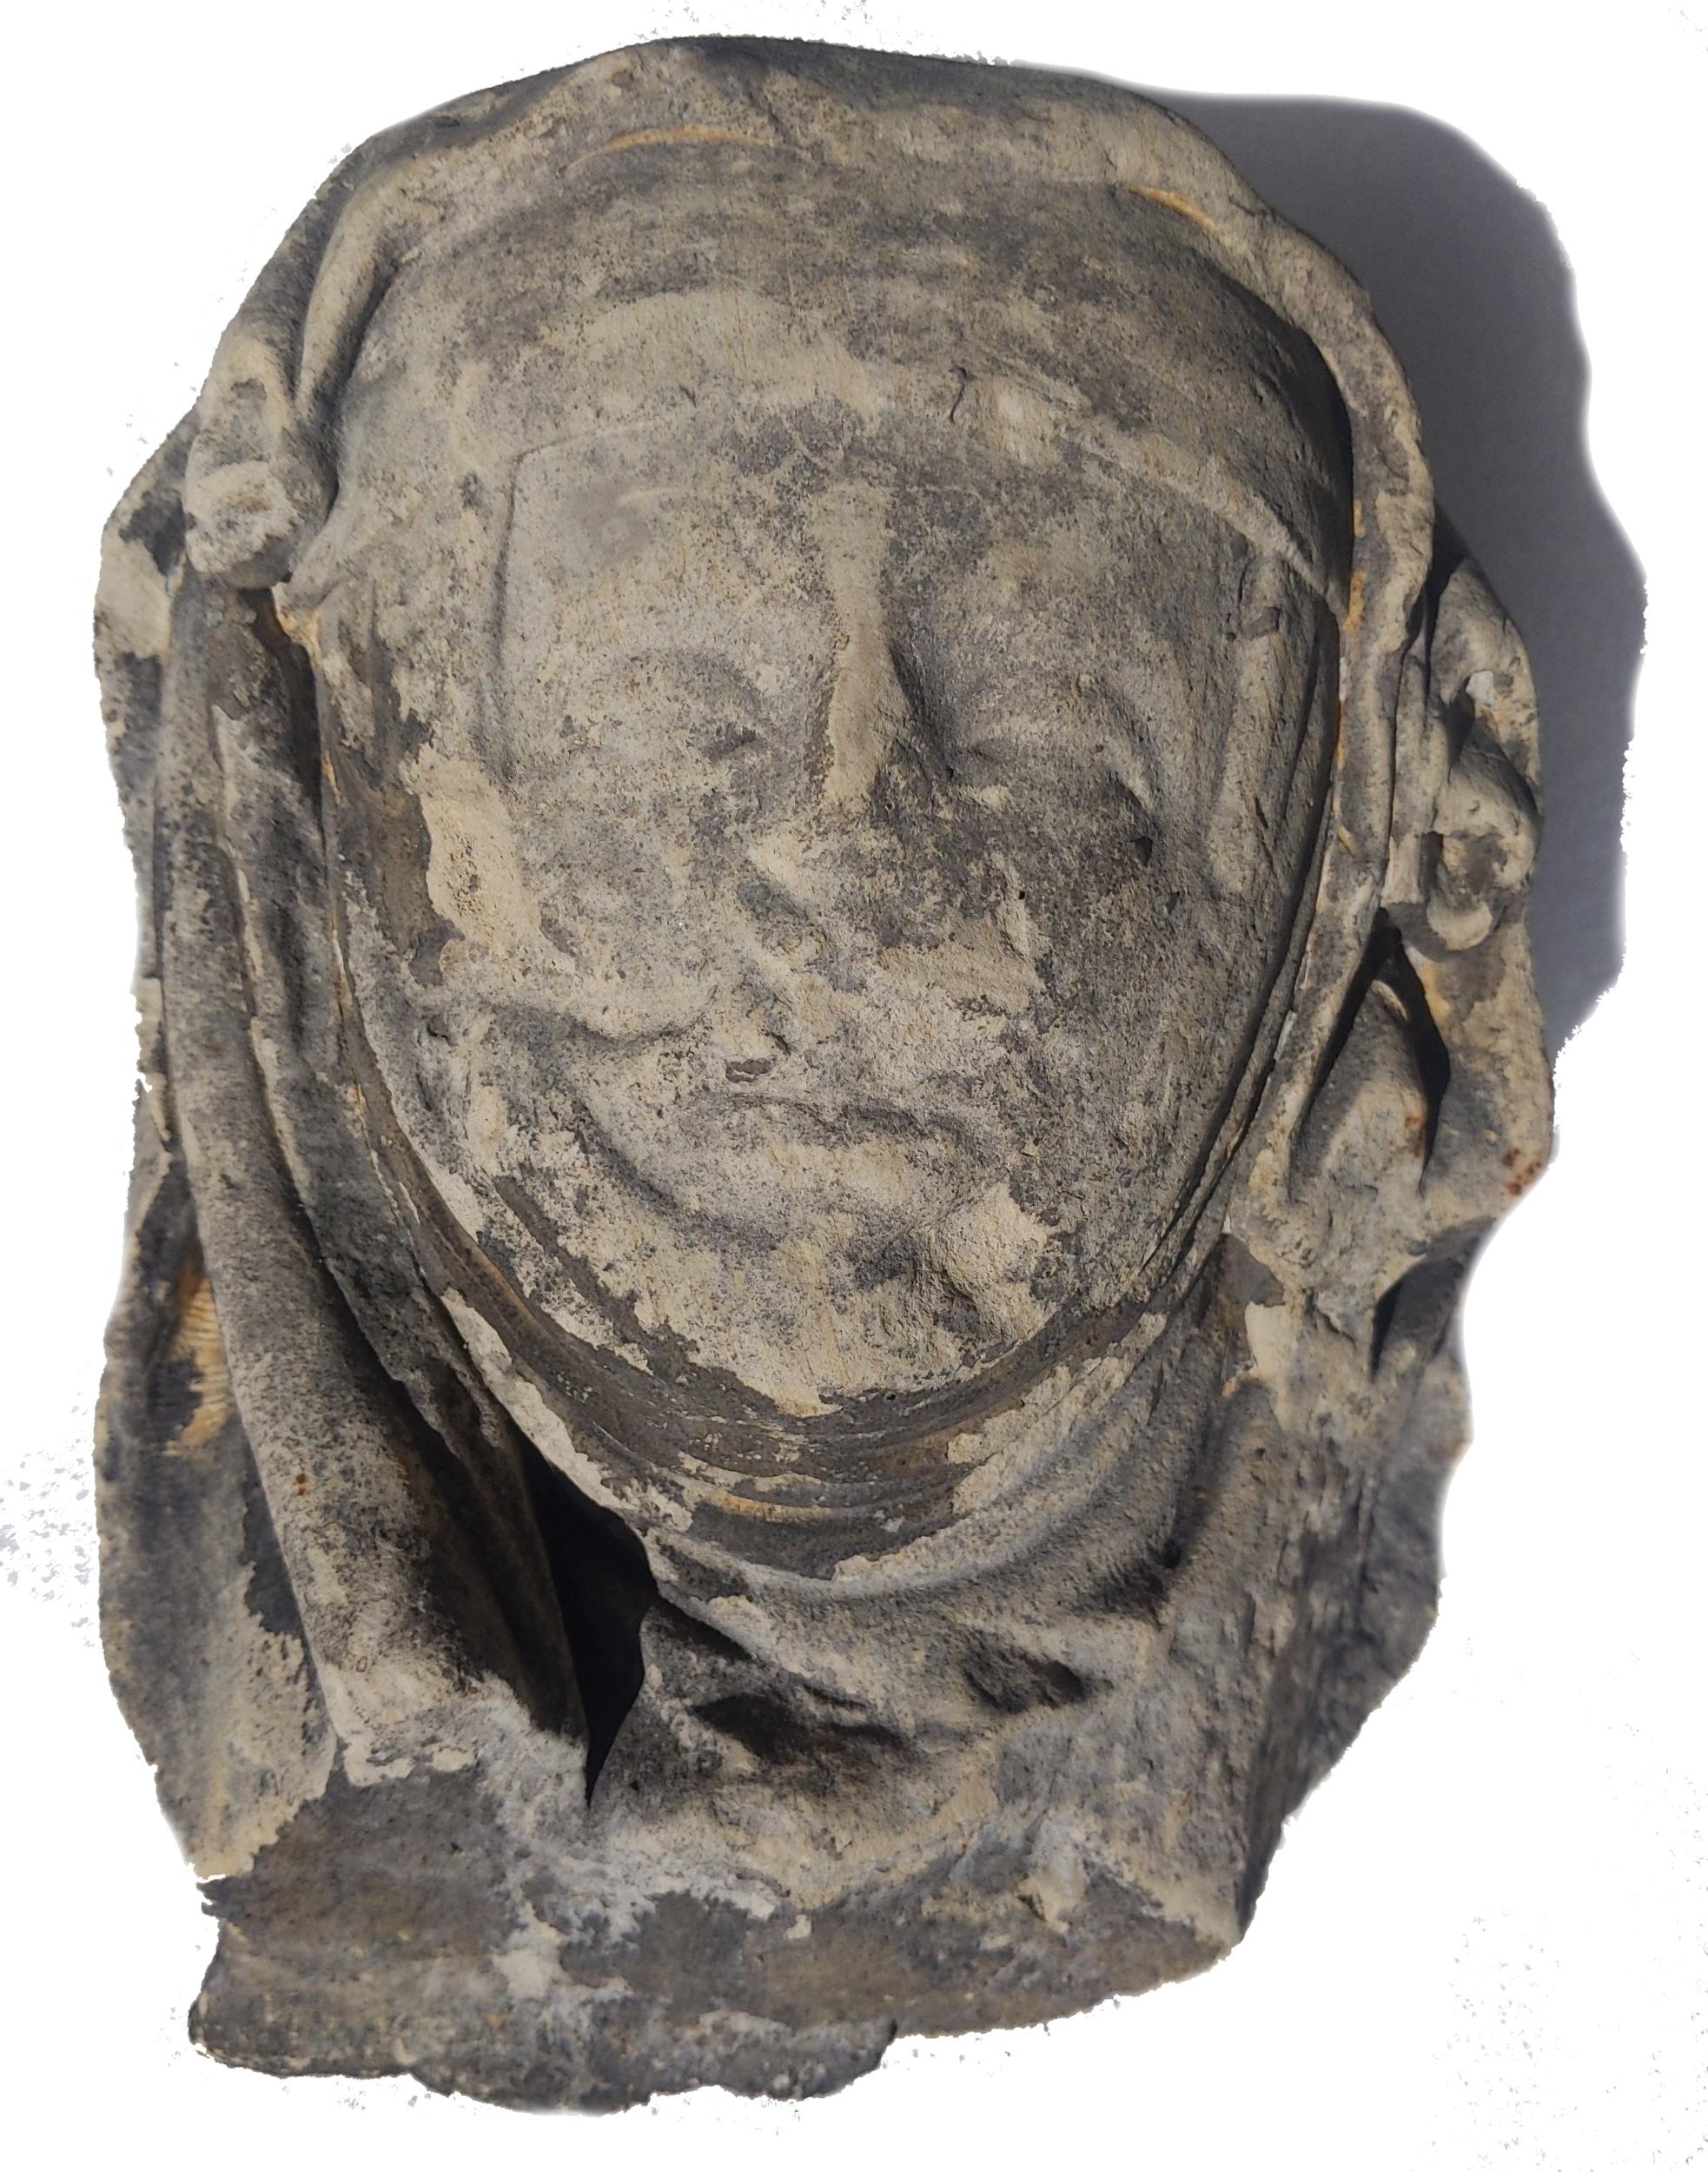 Unknown Figurative Sculpture - Limestone head of an abbess circa 1400